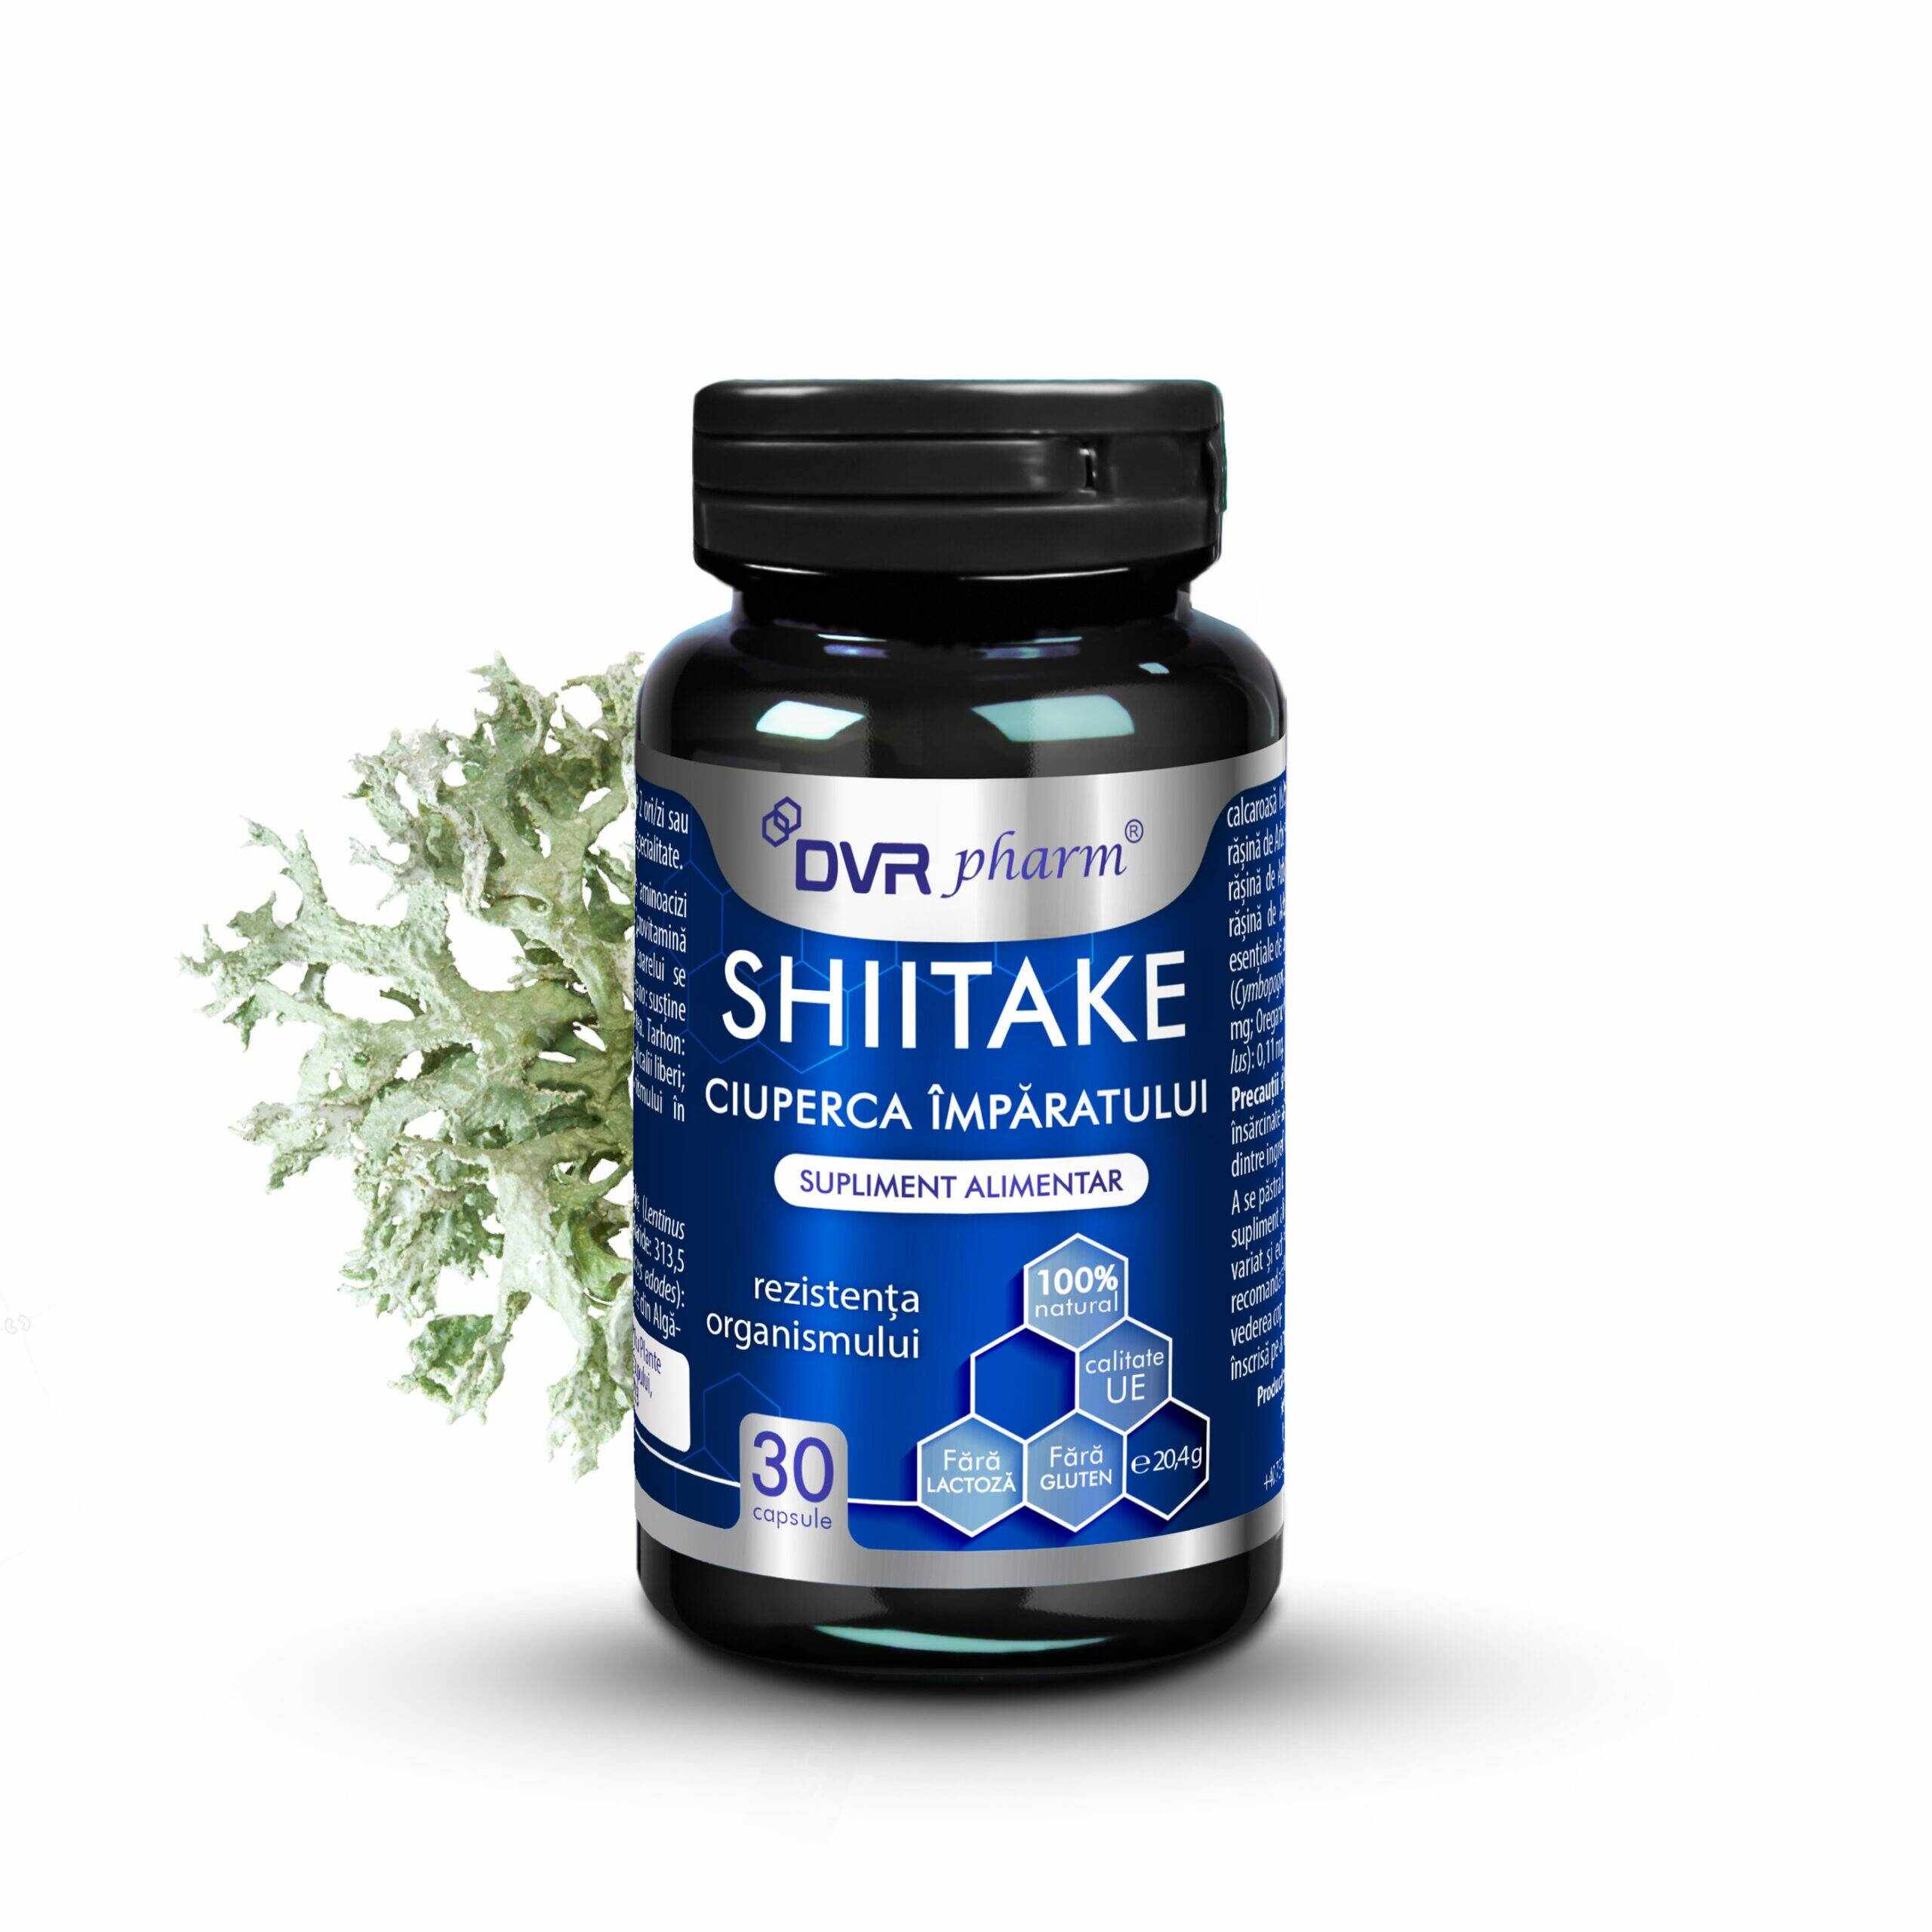 SHIITAKE, Ciuperca Imparatului, pentru imunitatea organismului, 30 capsule, DVR Pharm